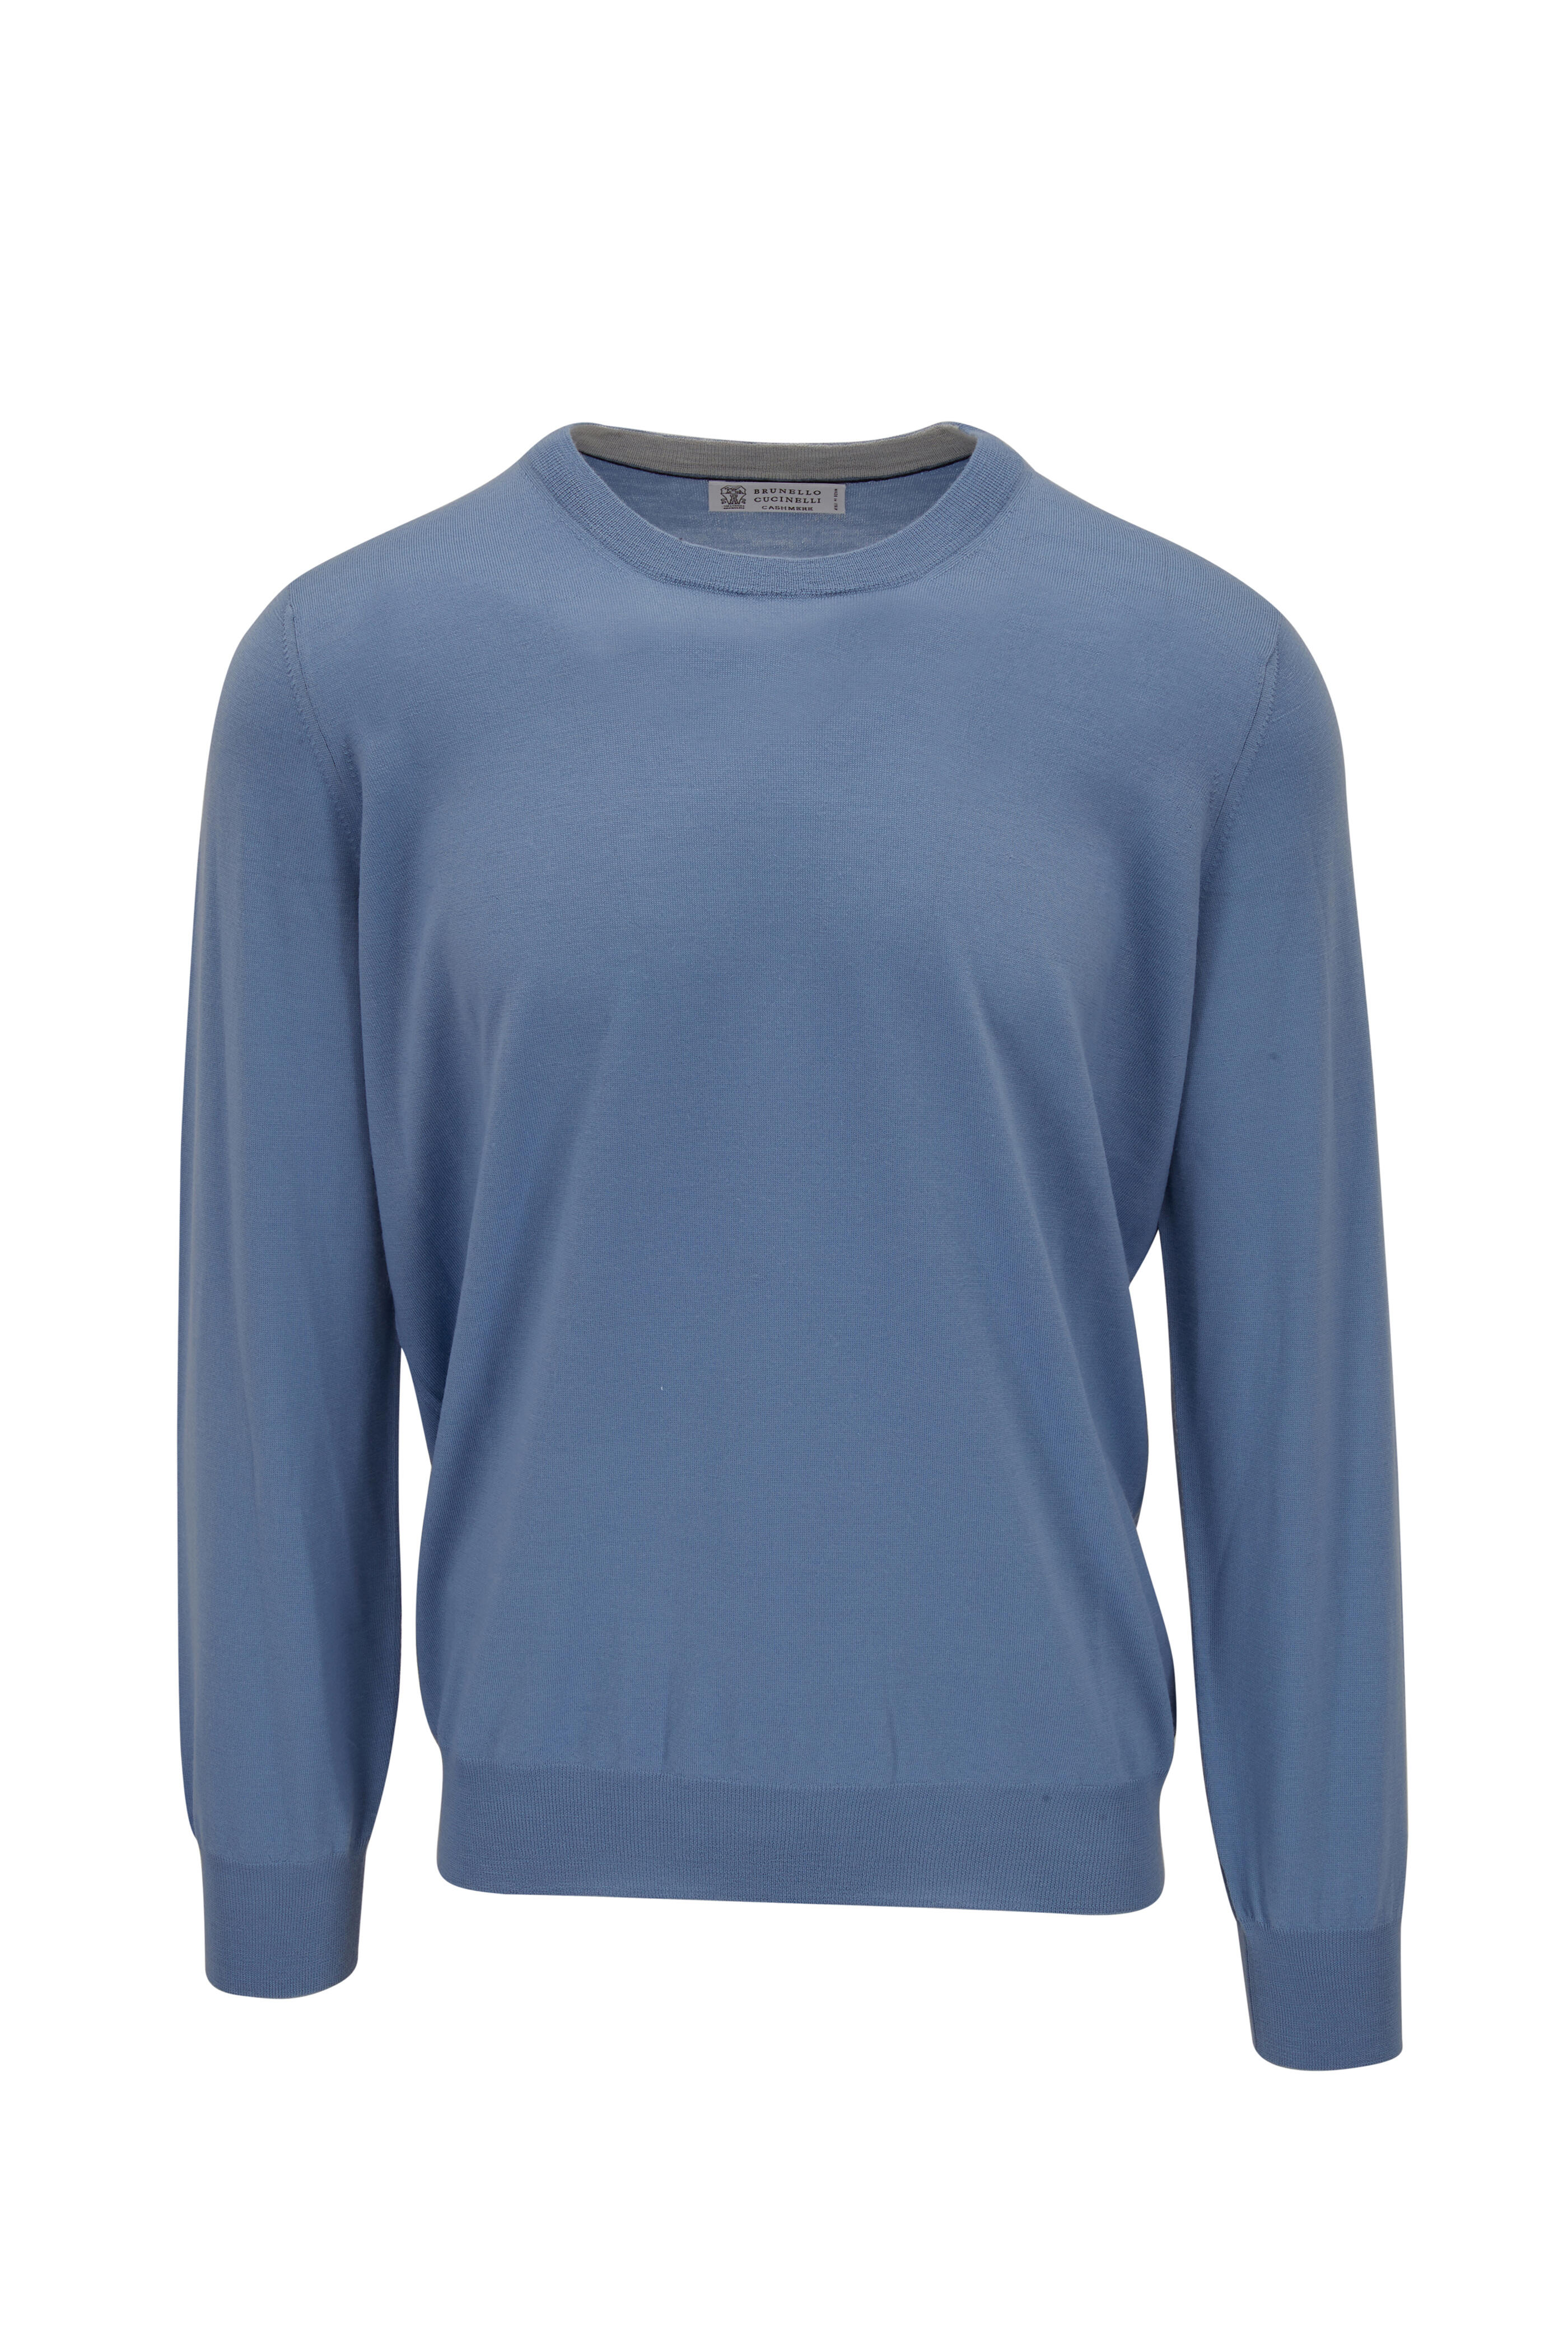 Brunello Cucinelli - Light Blue Wool & Cashmere Crewneck Sweater